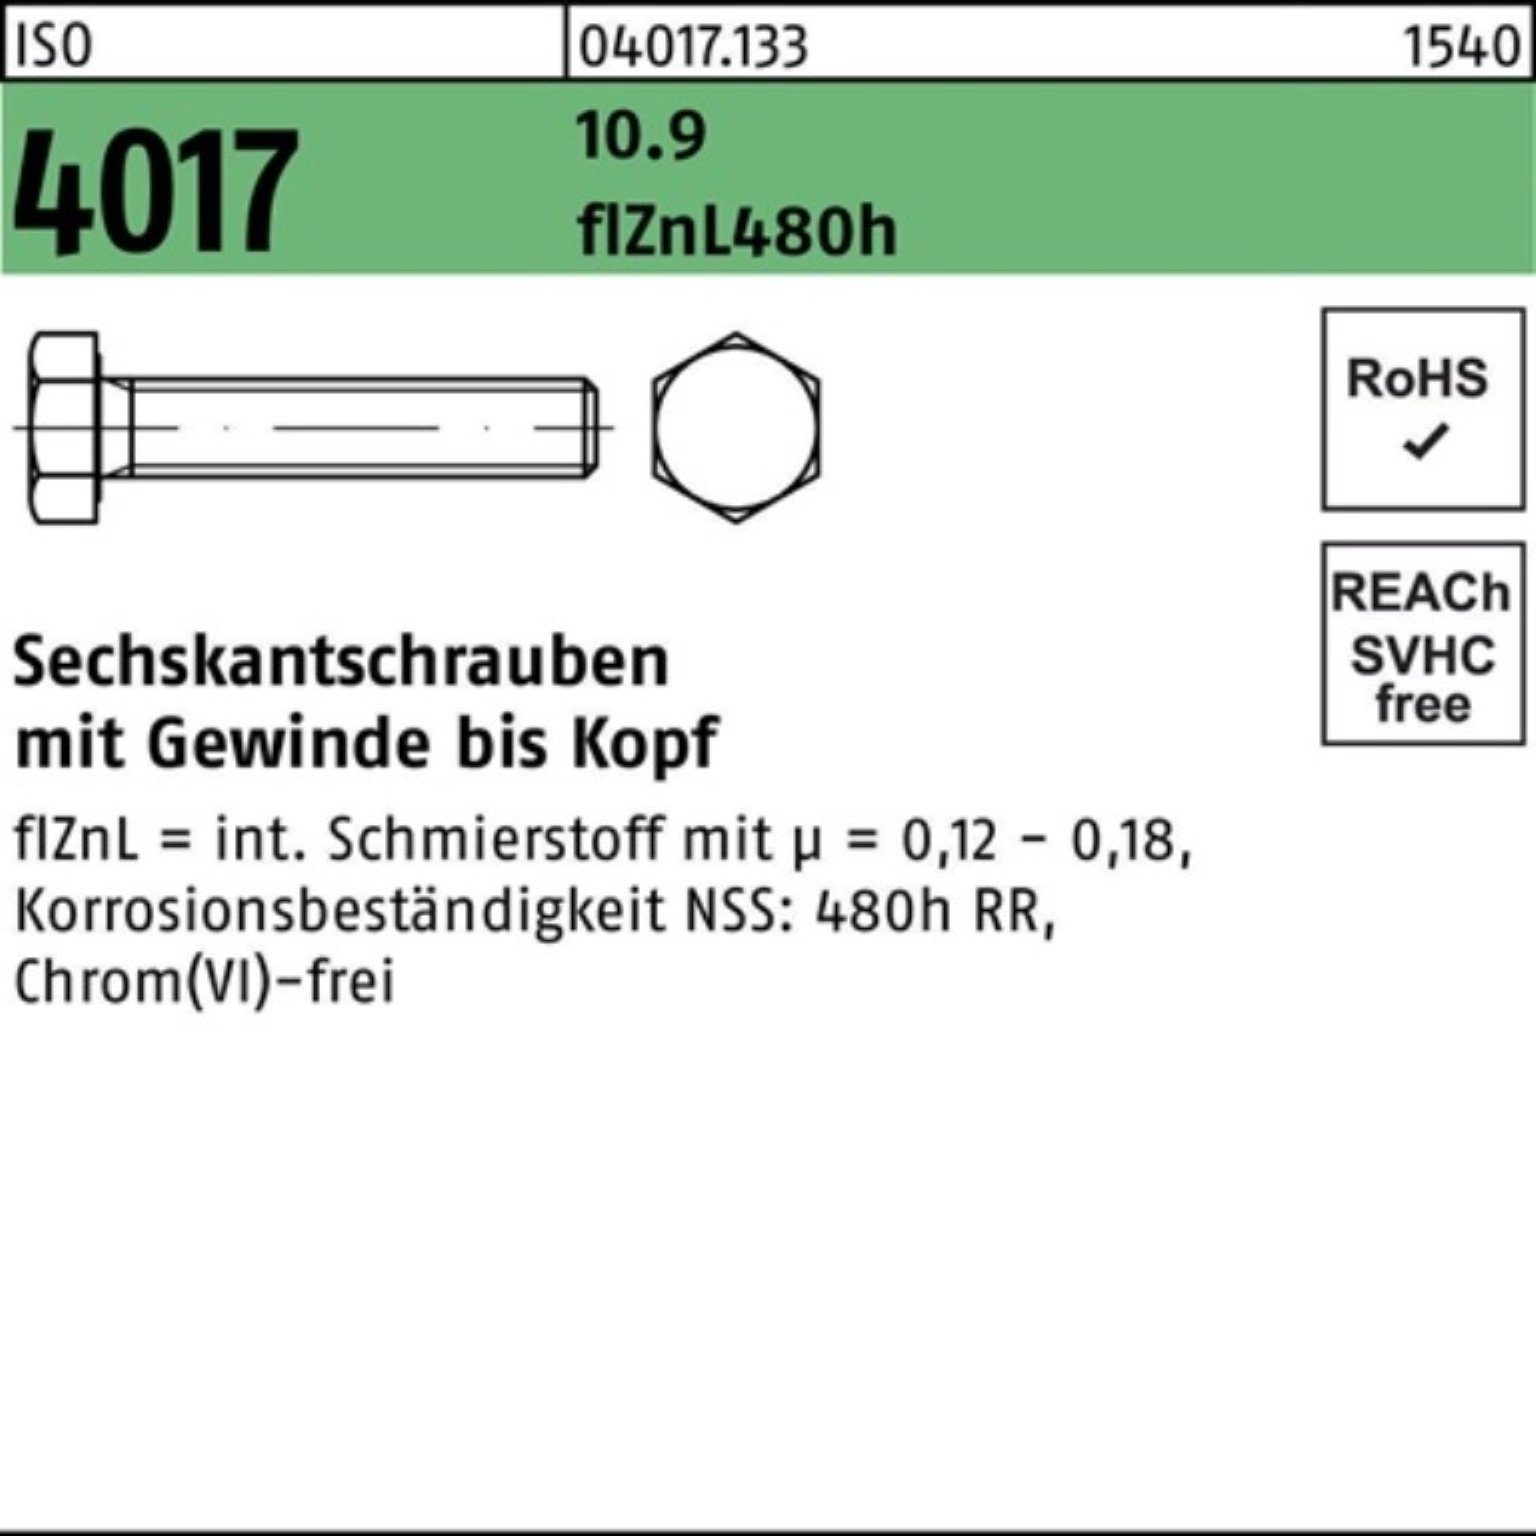 45 1 Pack Sechskantschraube ISO 10.9 M12x Bufab zinklamellenb. VG 4017 Sechskantschraube 100er